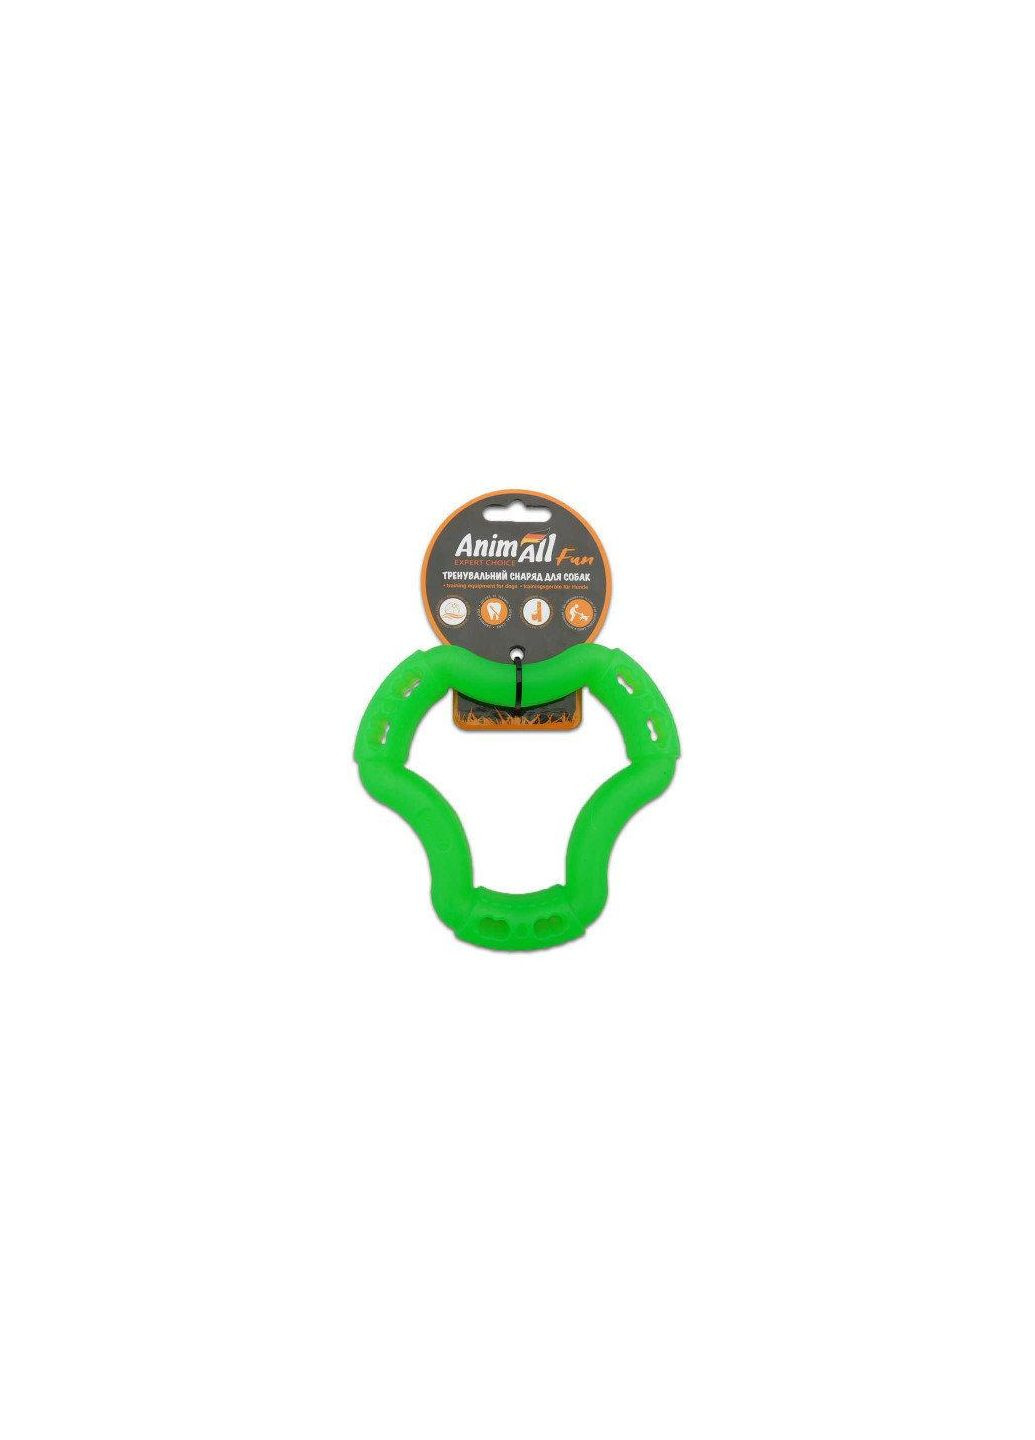 Игрушка Fun кольцо 6 сторон, зелёный, 12 см AnimAll (278309137)